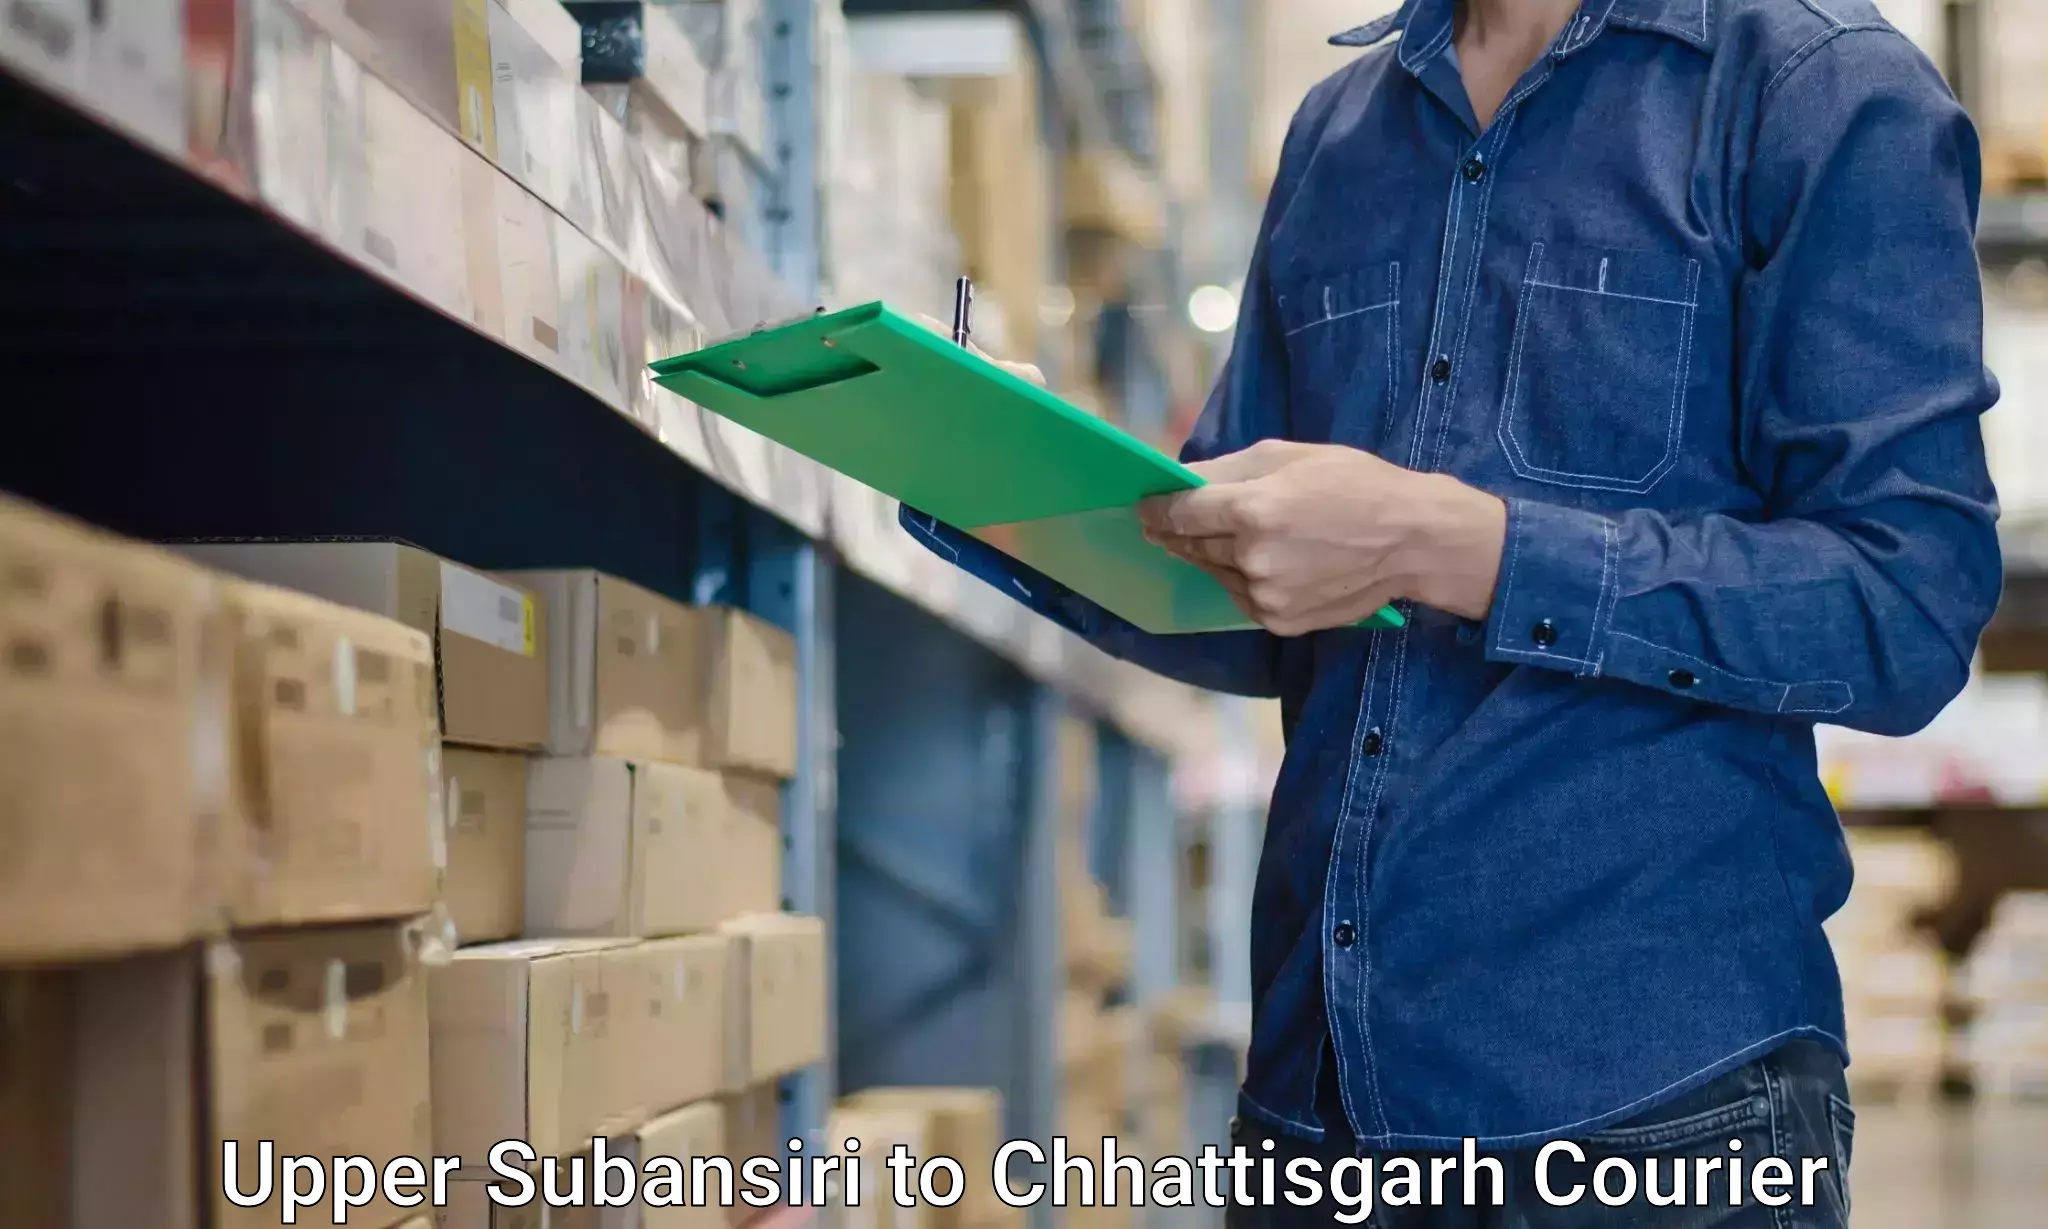 Household moving companies Upper Subansiri to Raigarh